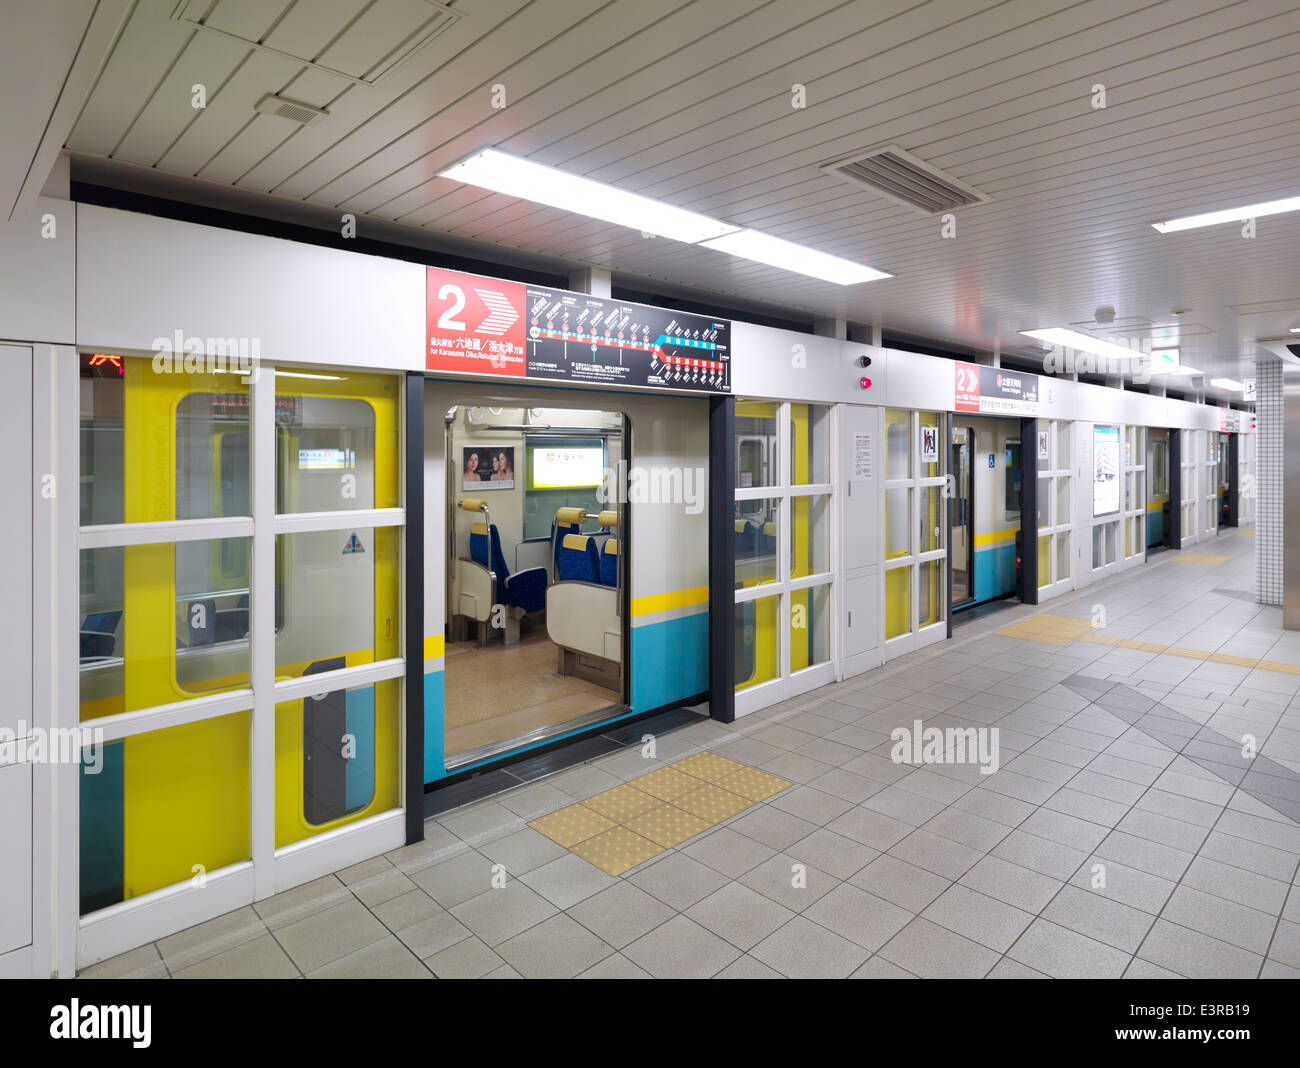 Subway train at a station platform in Kyoto, Japan. Stock Photo